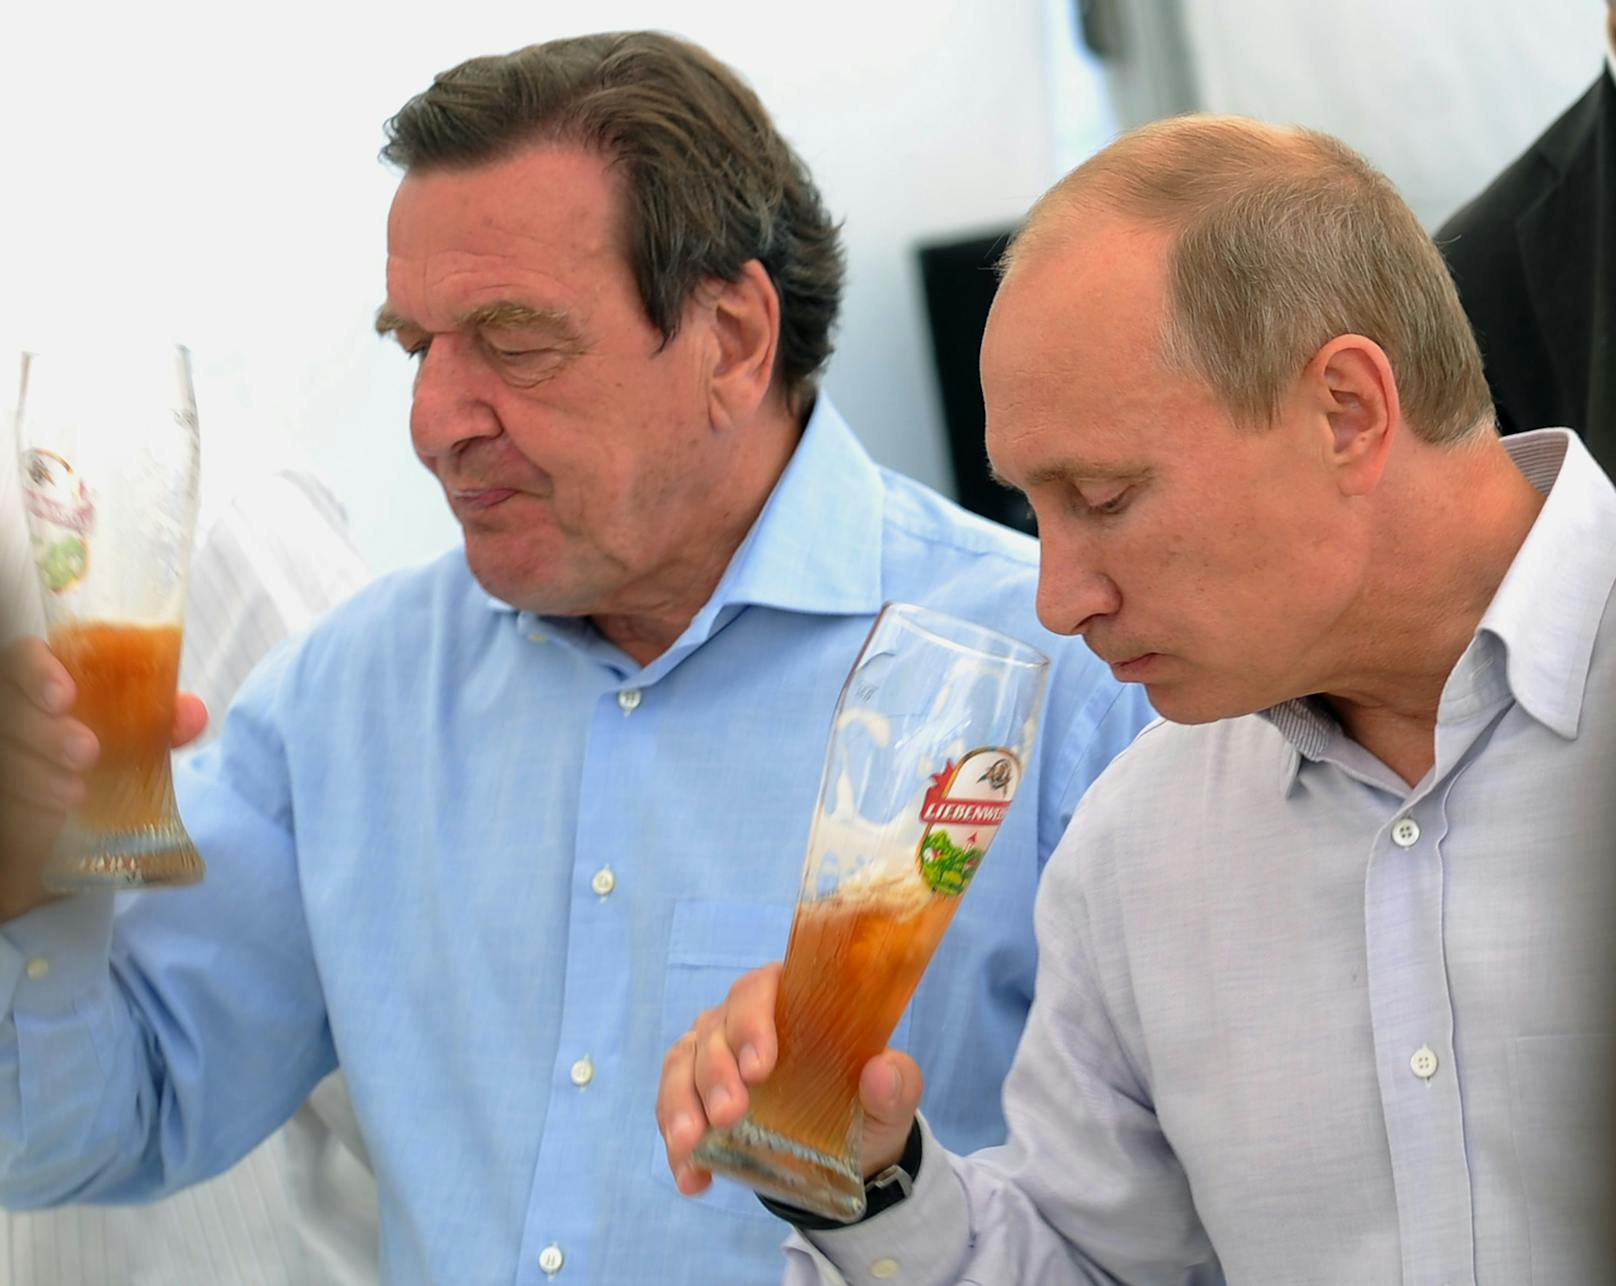 Ein Bild vergangener Tage: Schröder und Putin beim Biertrinken